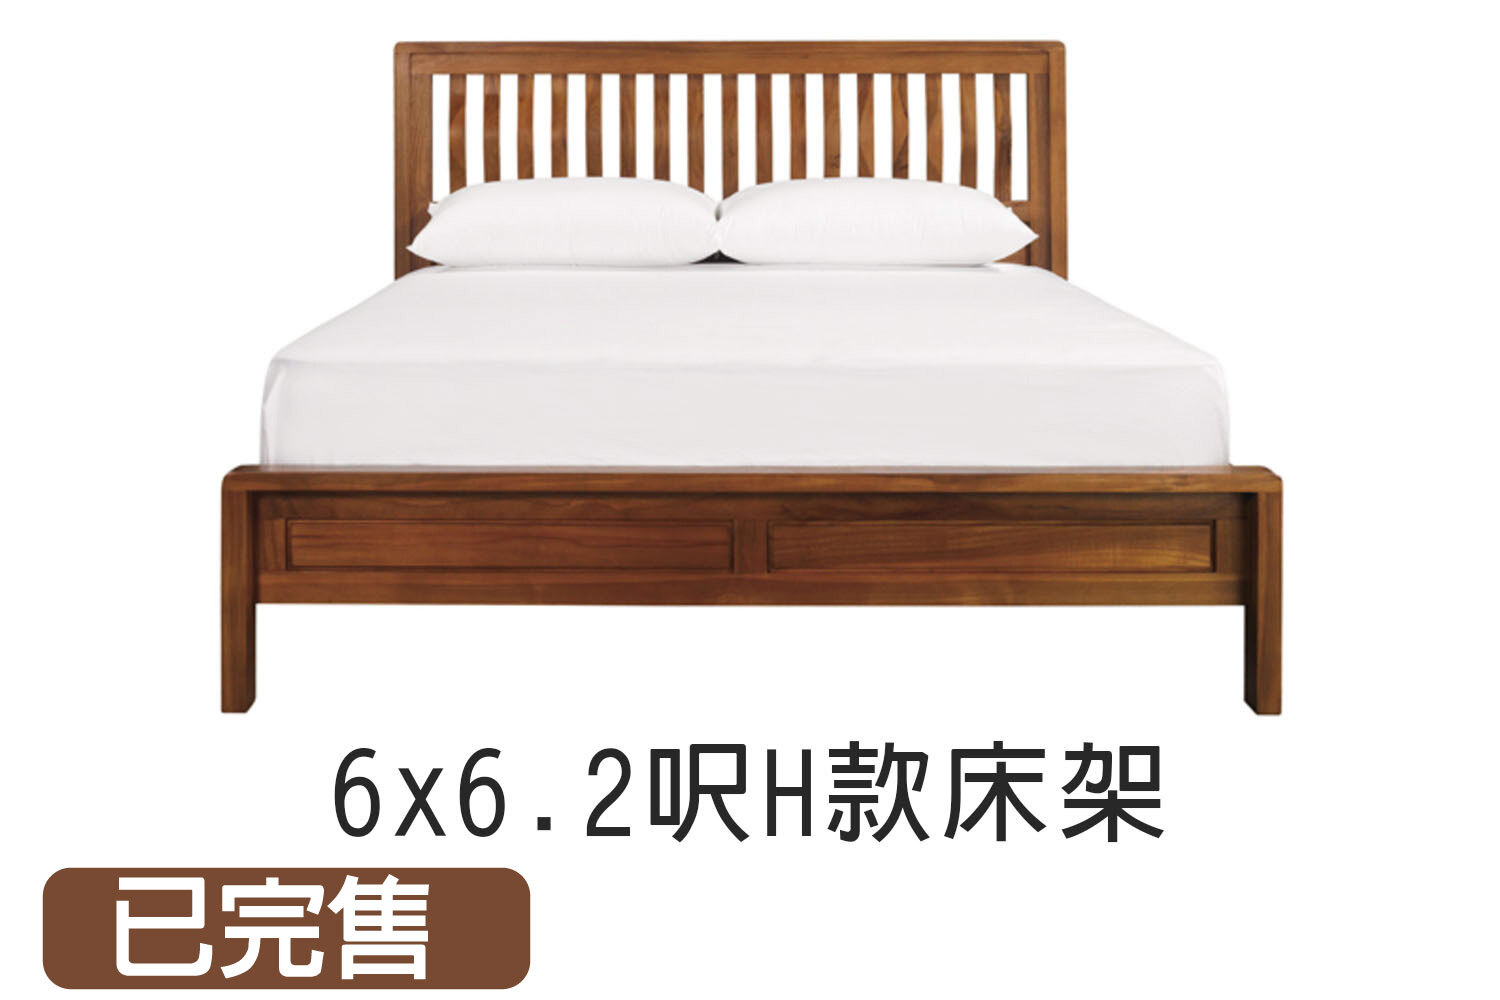 北歐風H款6x6.2呎雙人實木床架 WMBS39T1